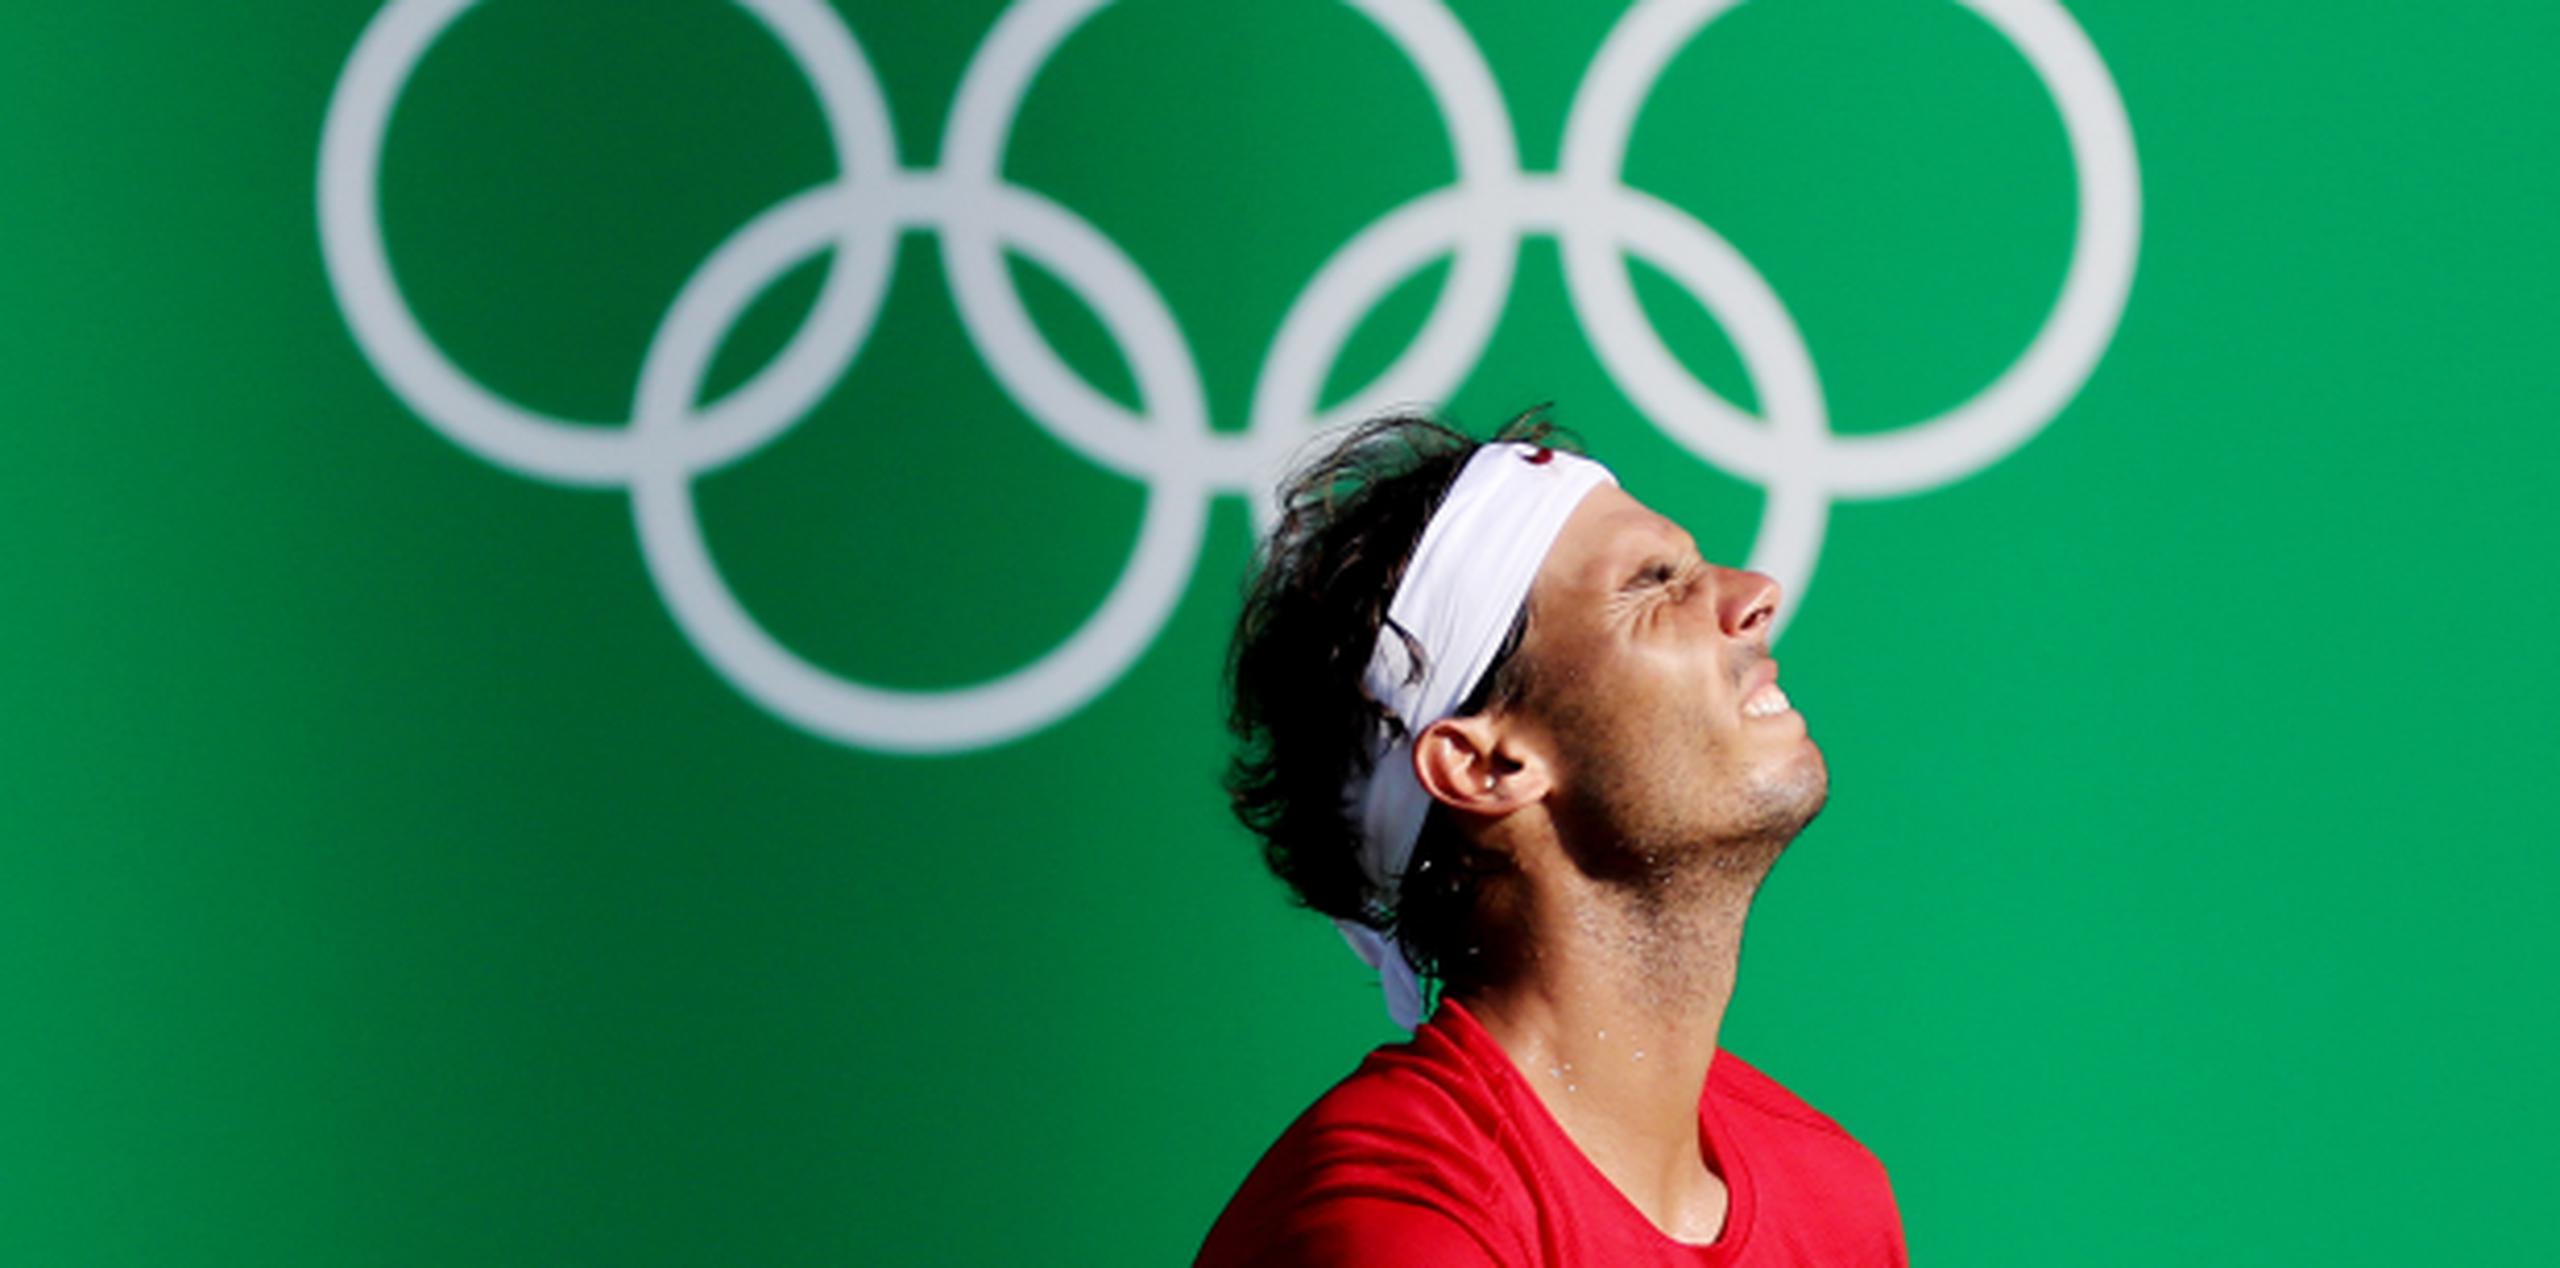 Rafael Nadal reacciona frustrado durante el partido ante Kei Nishikori por la medalla de bronce de Río 2016. (EFE/LEONARDO MUÑOZ)
